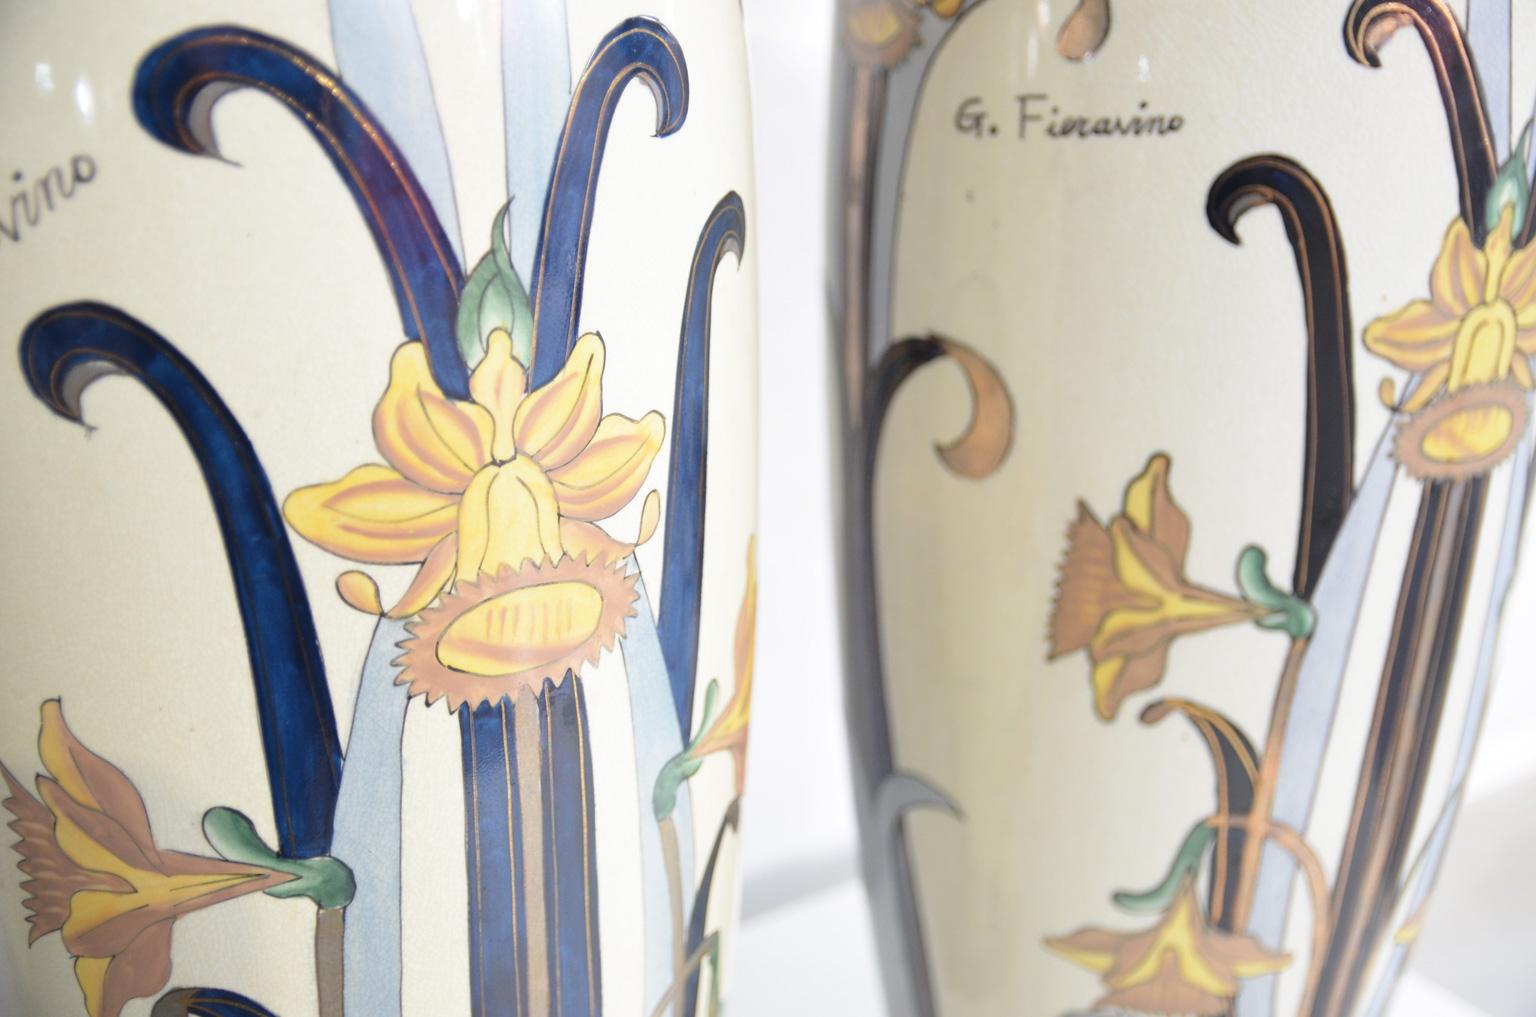 3 Italian Earthenware Art Nouveau Vases by G. Fieravino 3